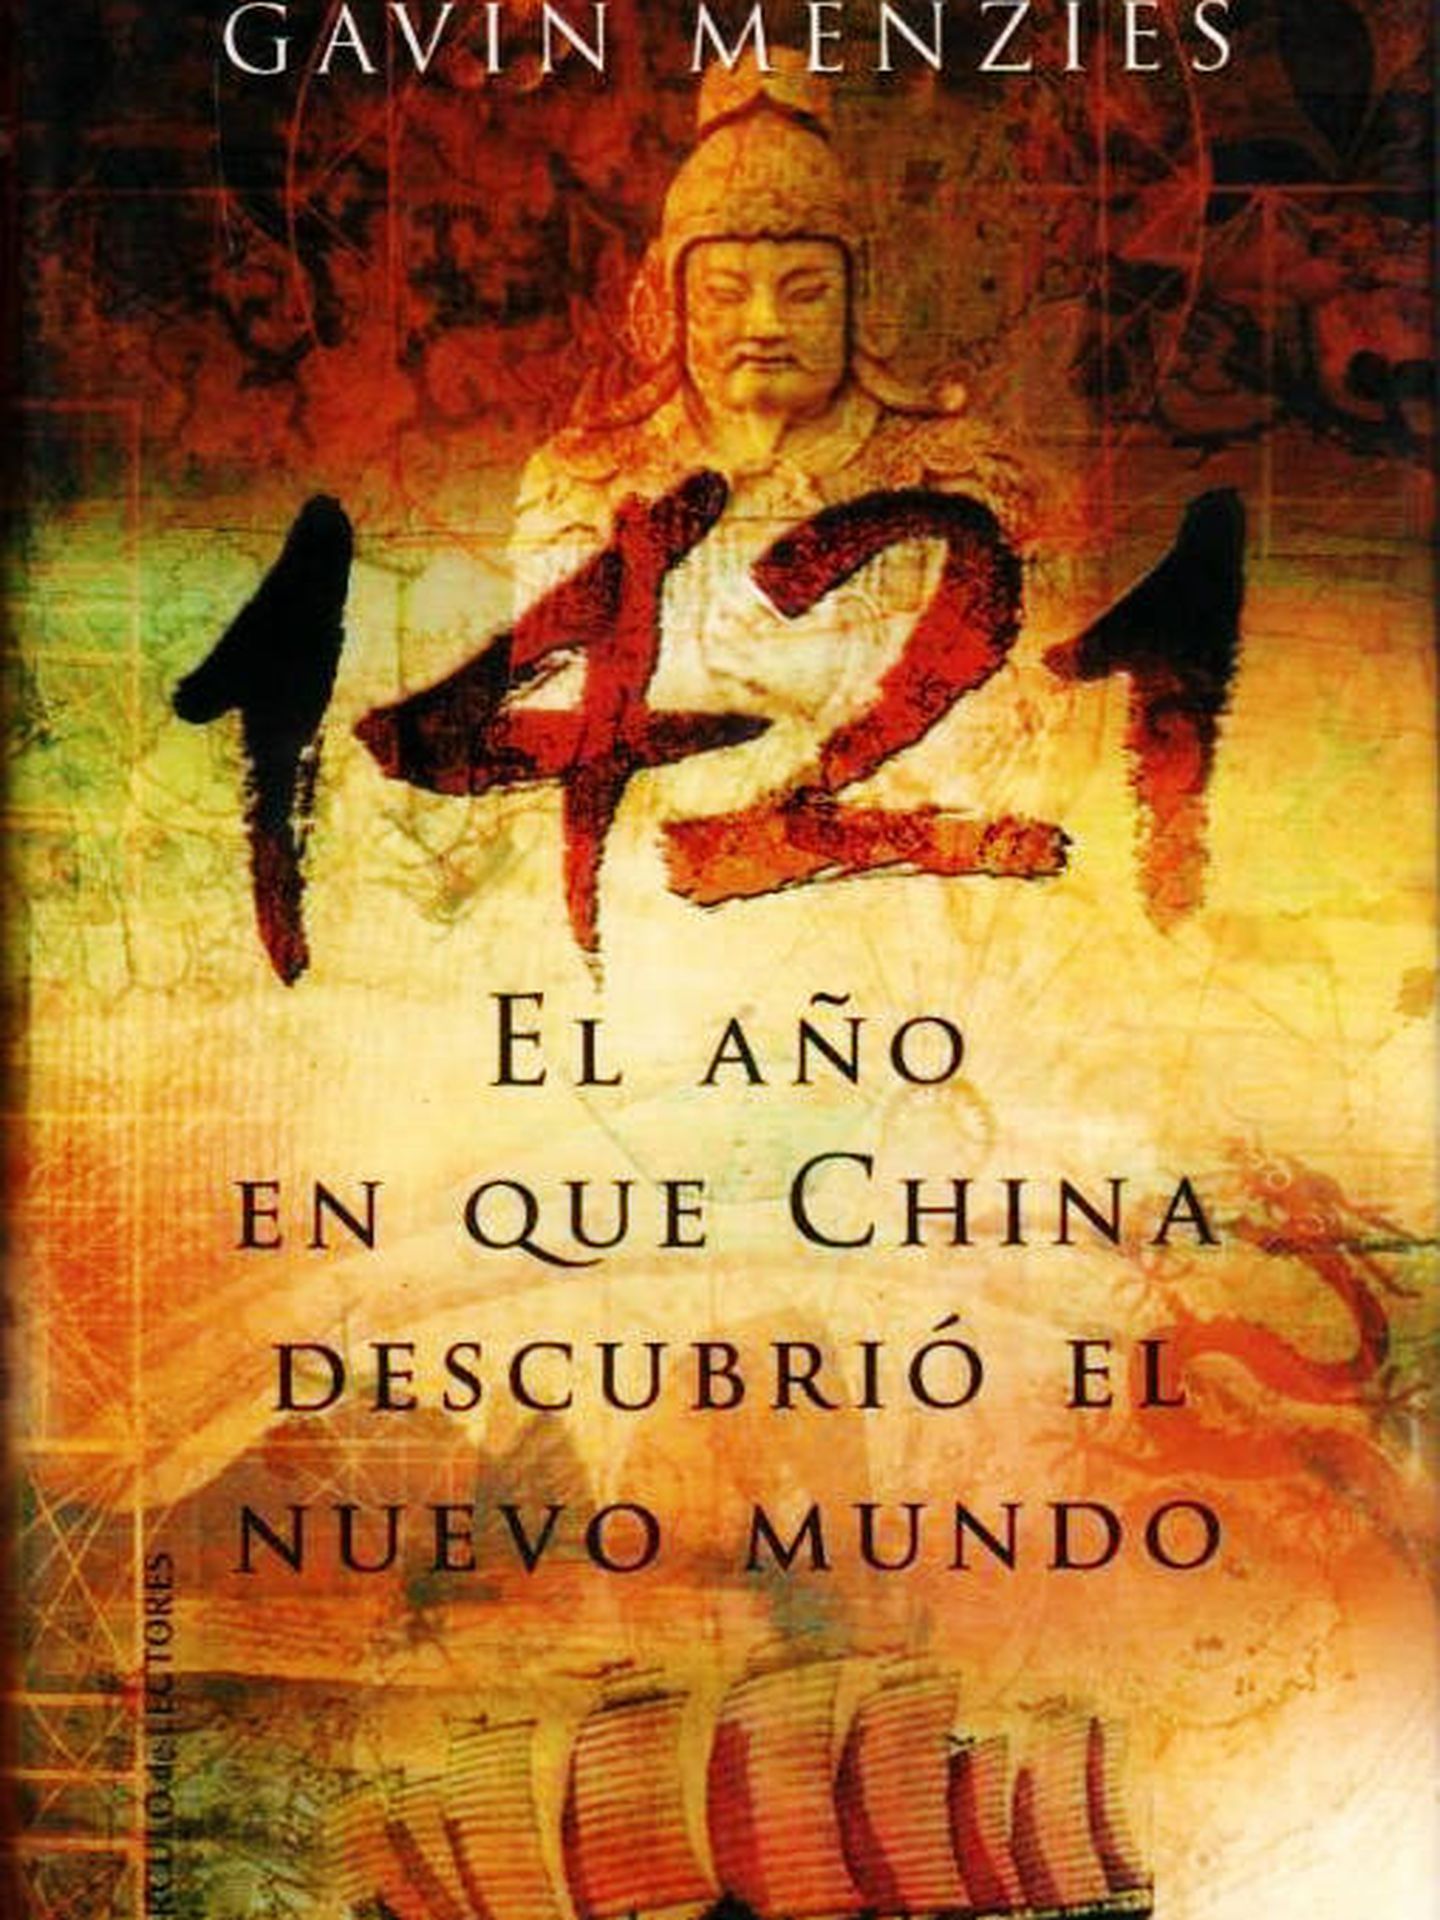 '1421. El año en que China descubrió el Nuevo Mundo'.